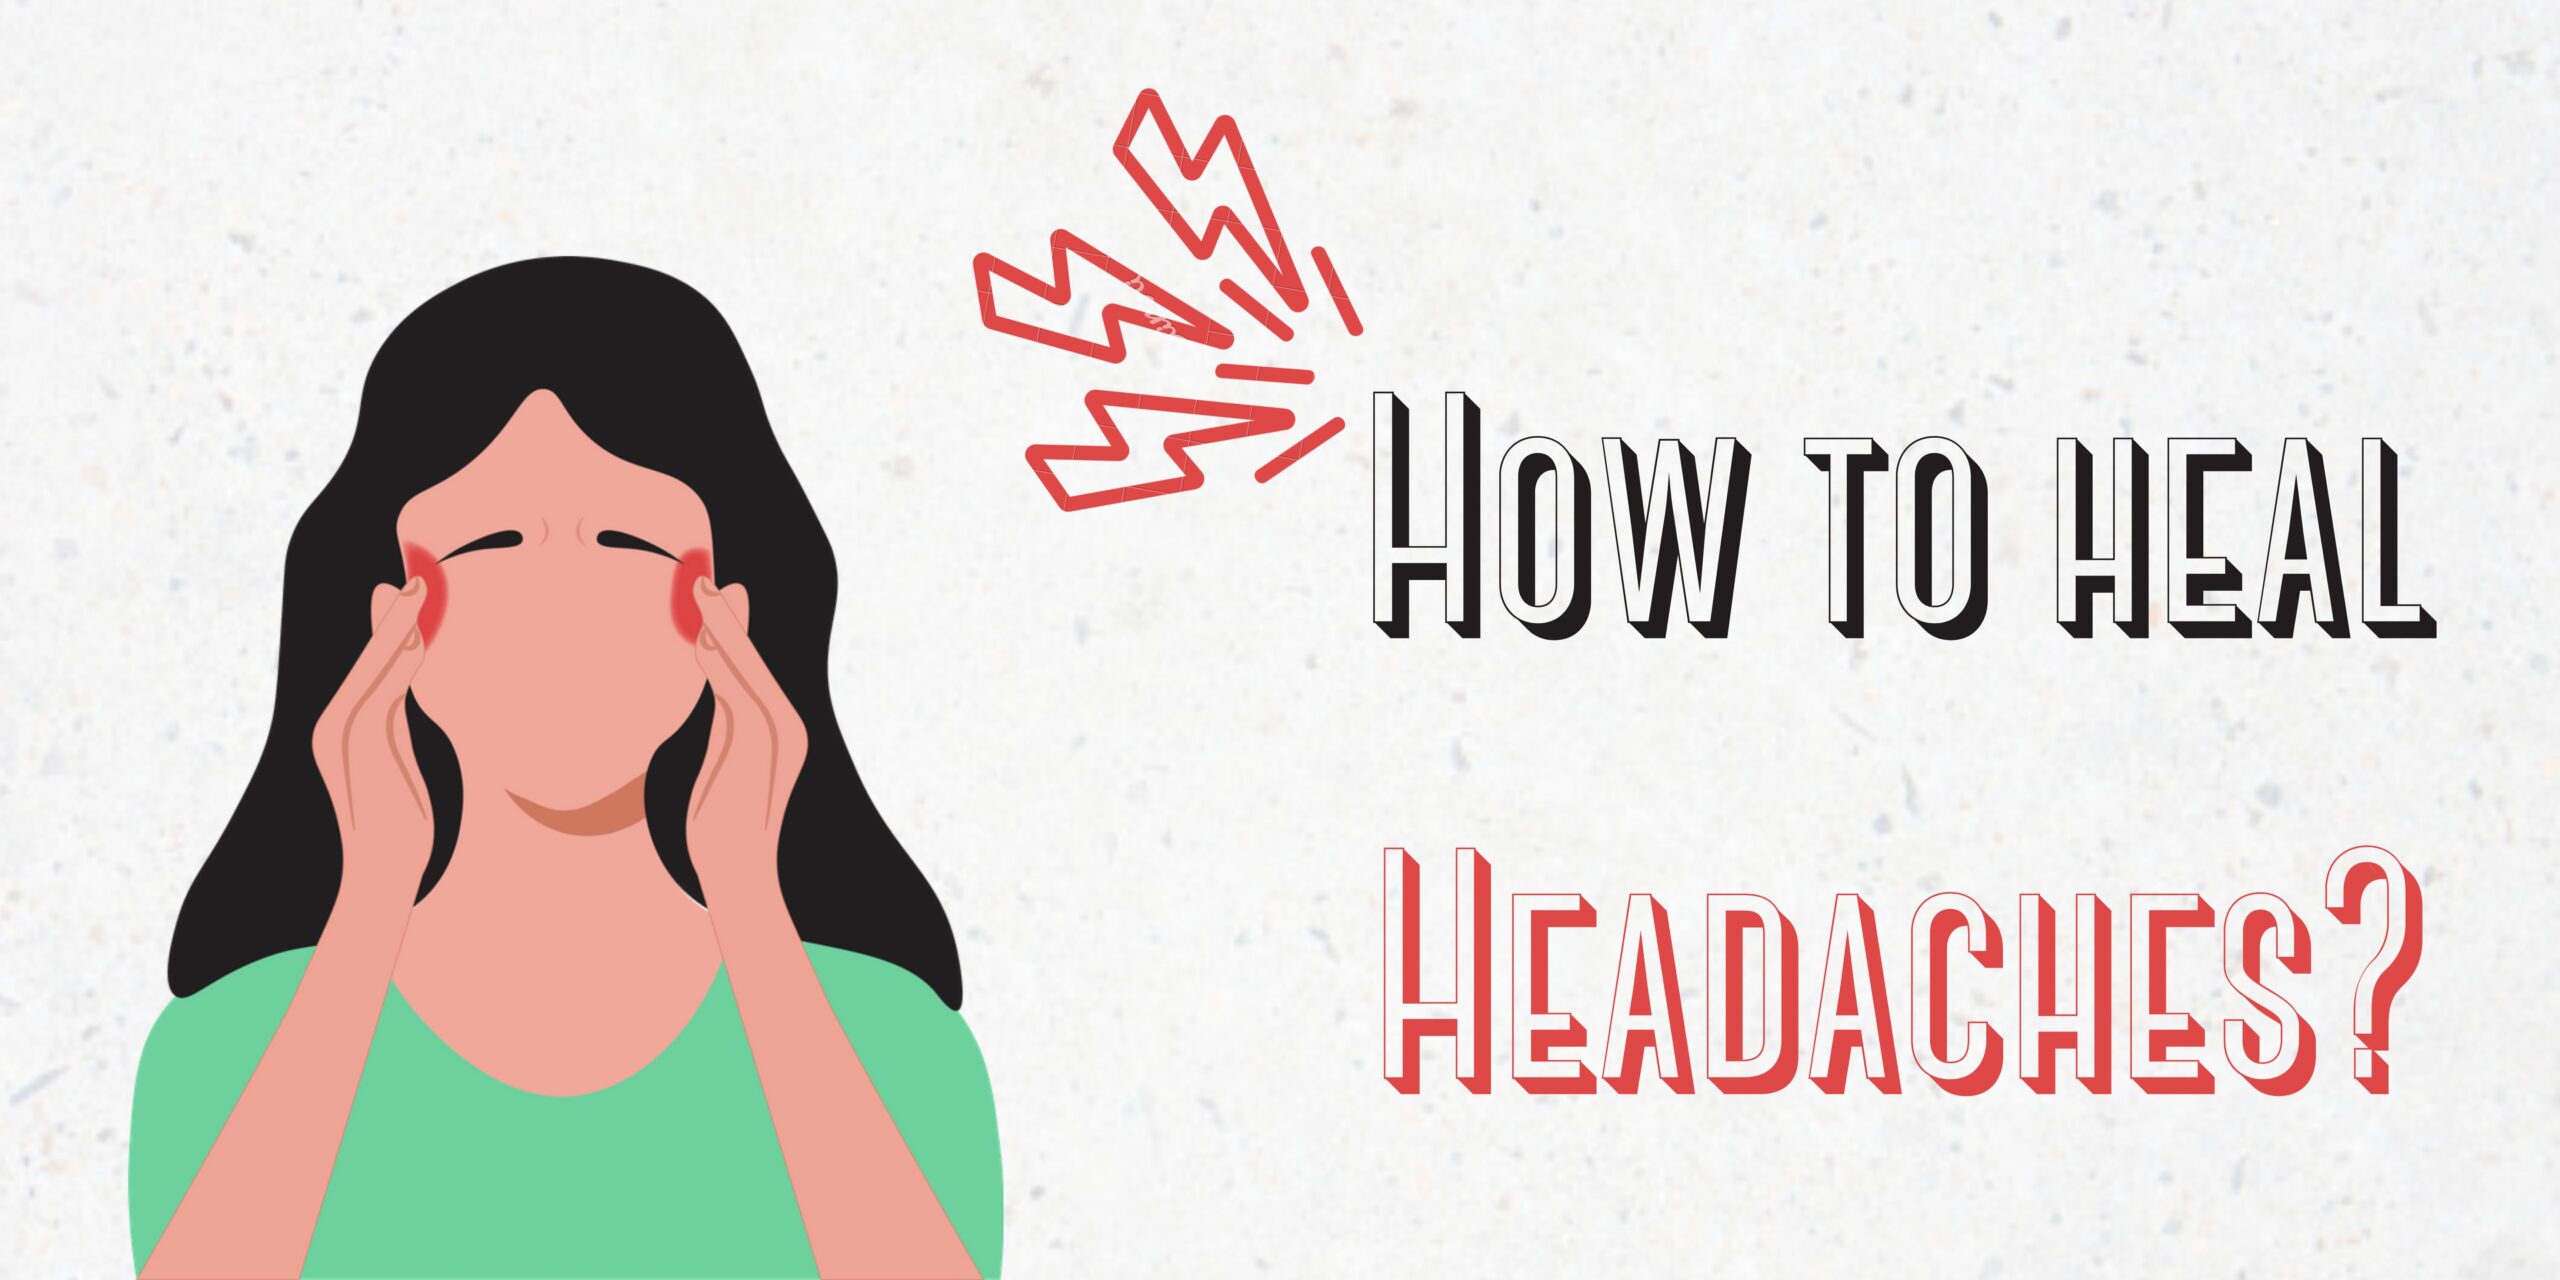 How to heal headaches?